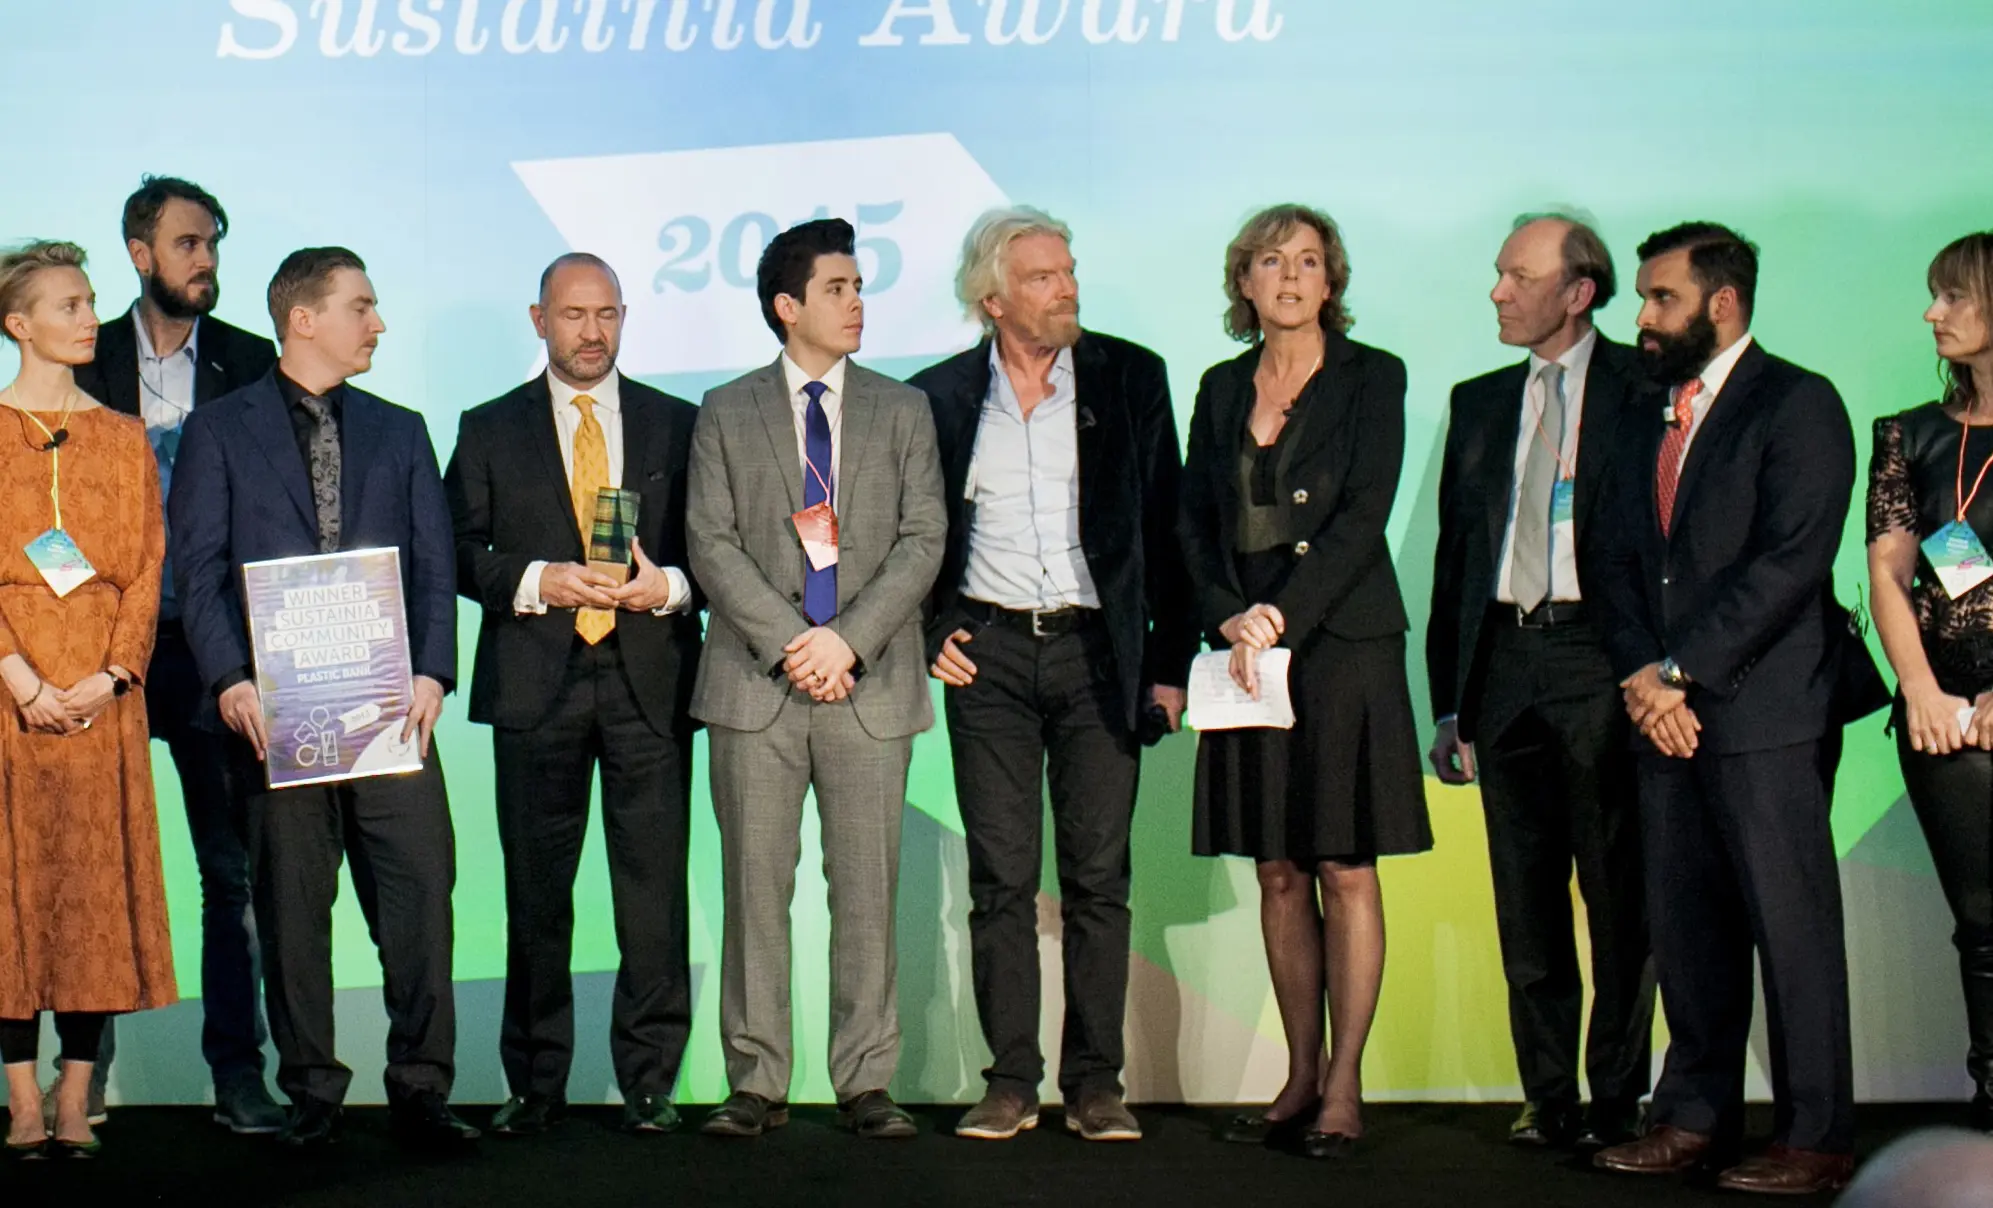 Sustainia 100 Award